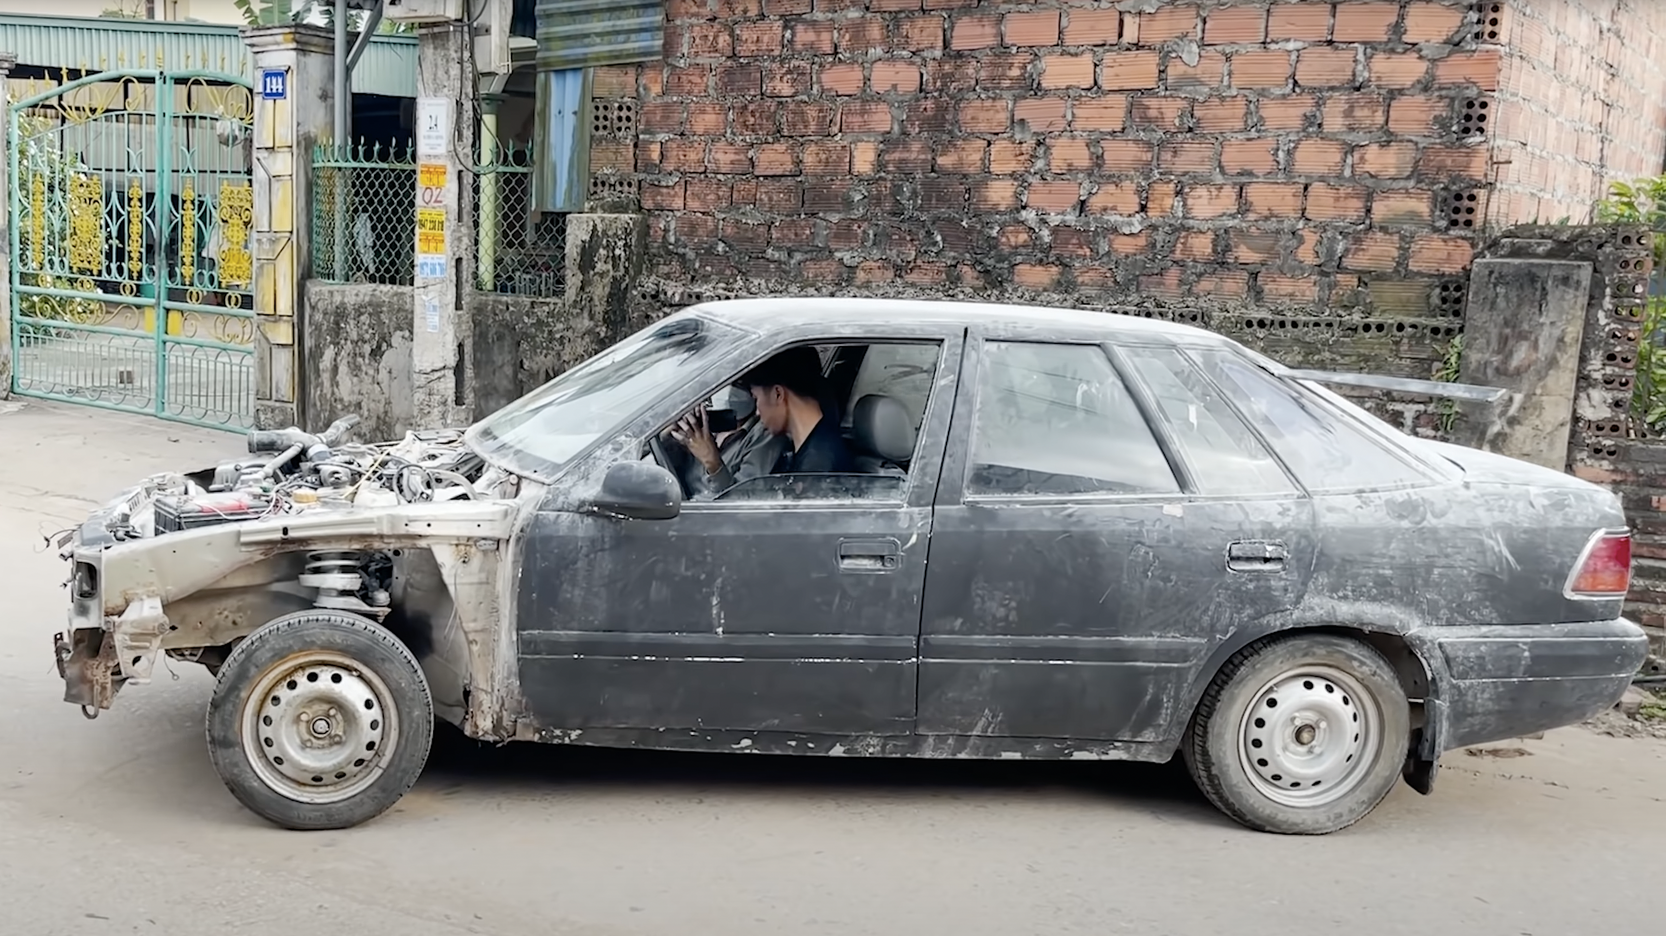 Xe ô tô VinFast LUX SA20 bán 15 tỷ tại Quảng Ninh mặc dù vừa mới đăng ký   Blog Xe Hơi Carmudi